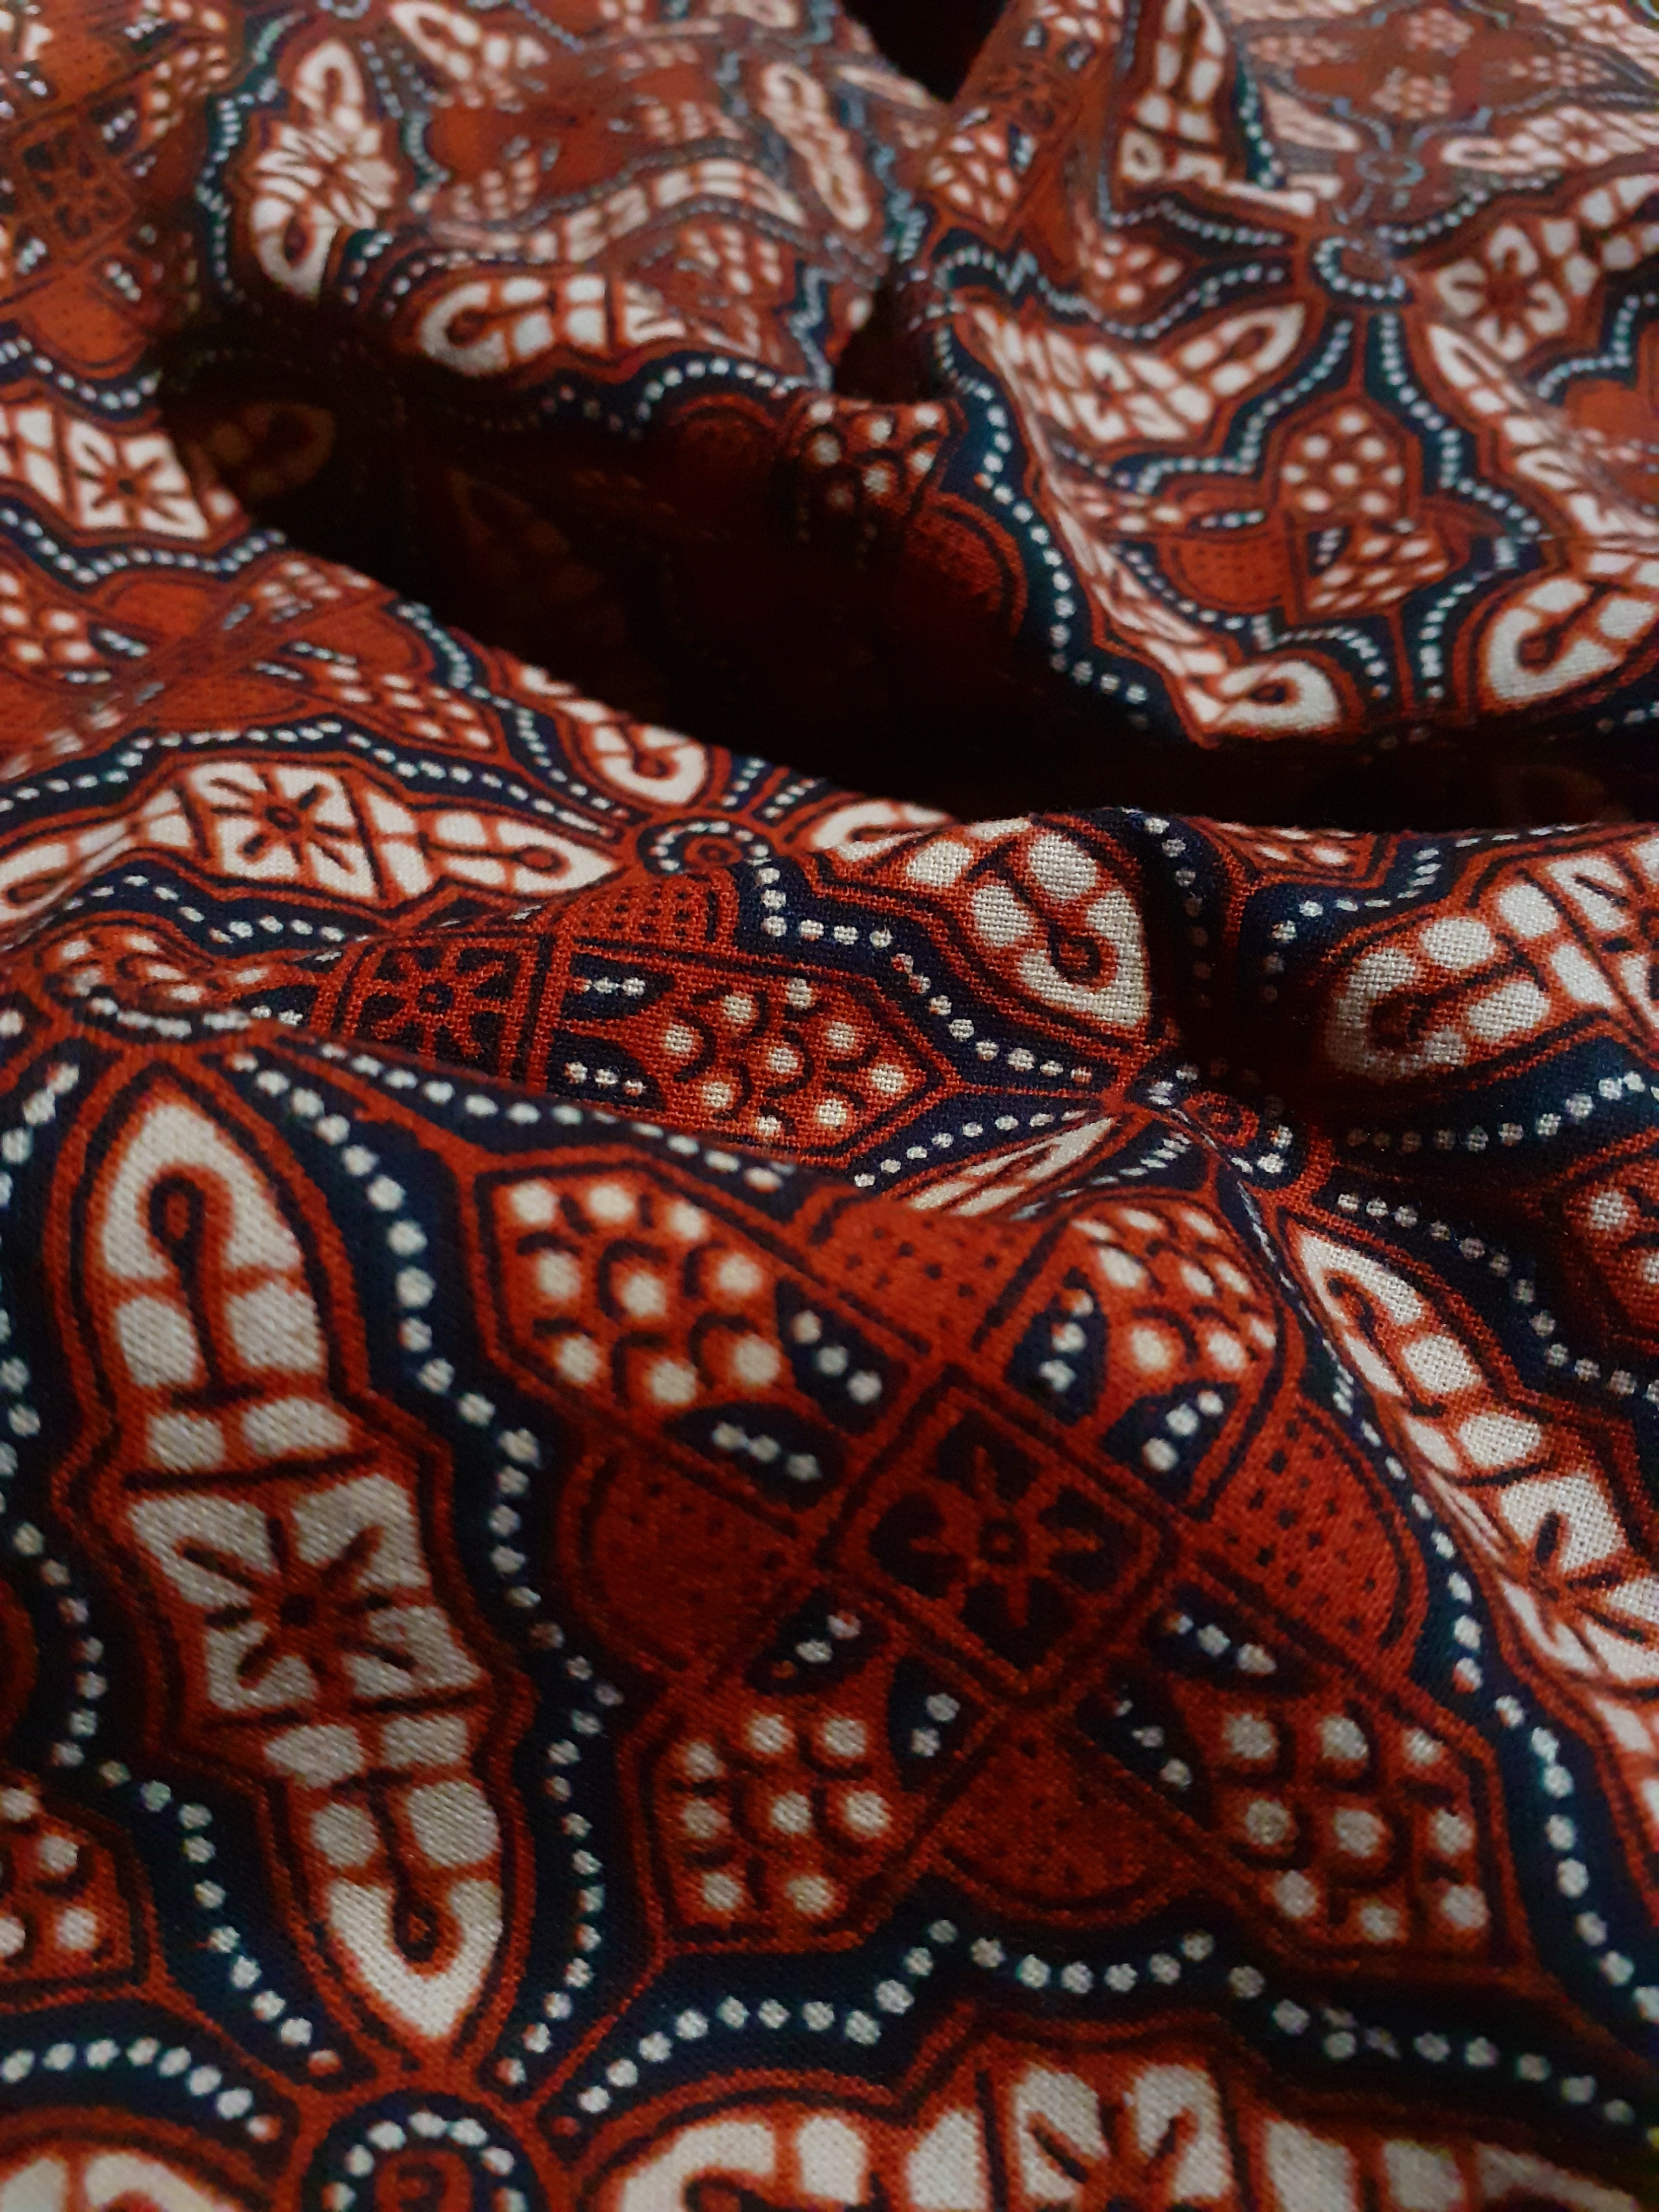 Batik sebagai Identitas Nusantara